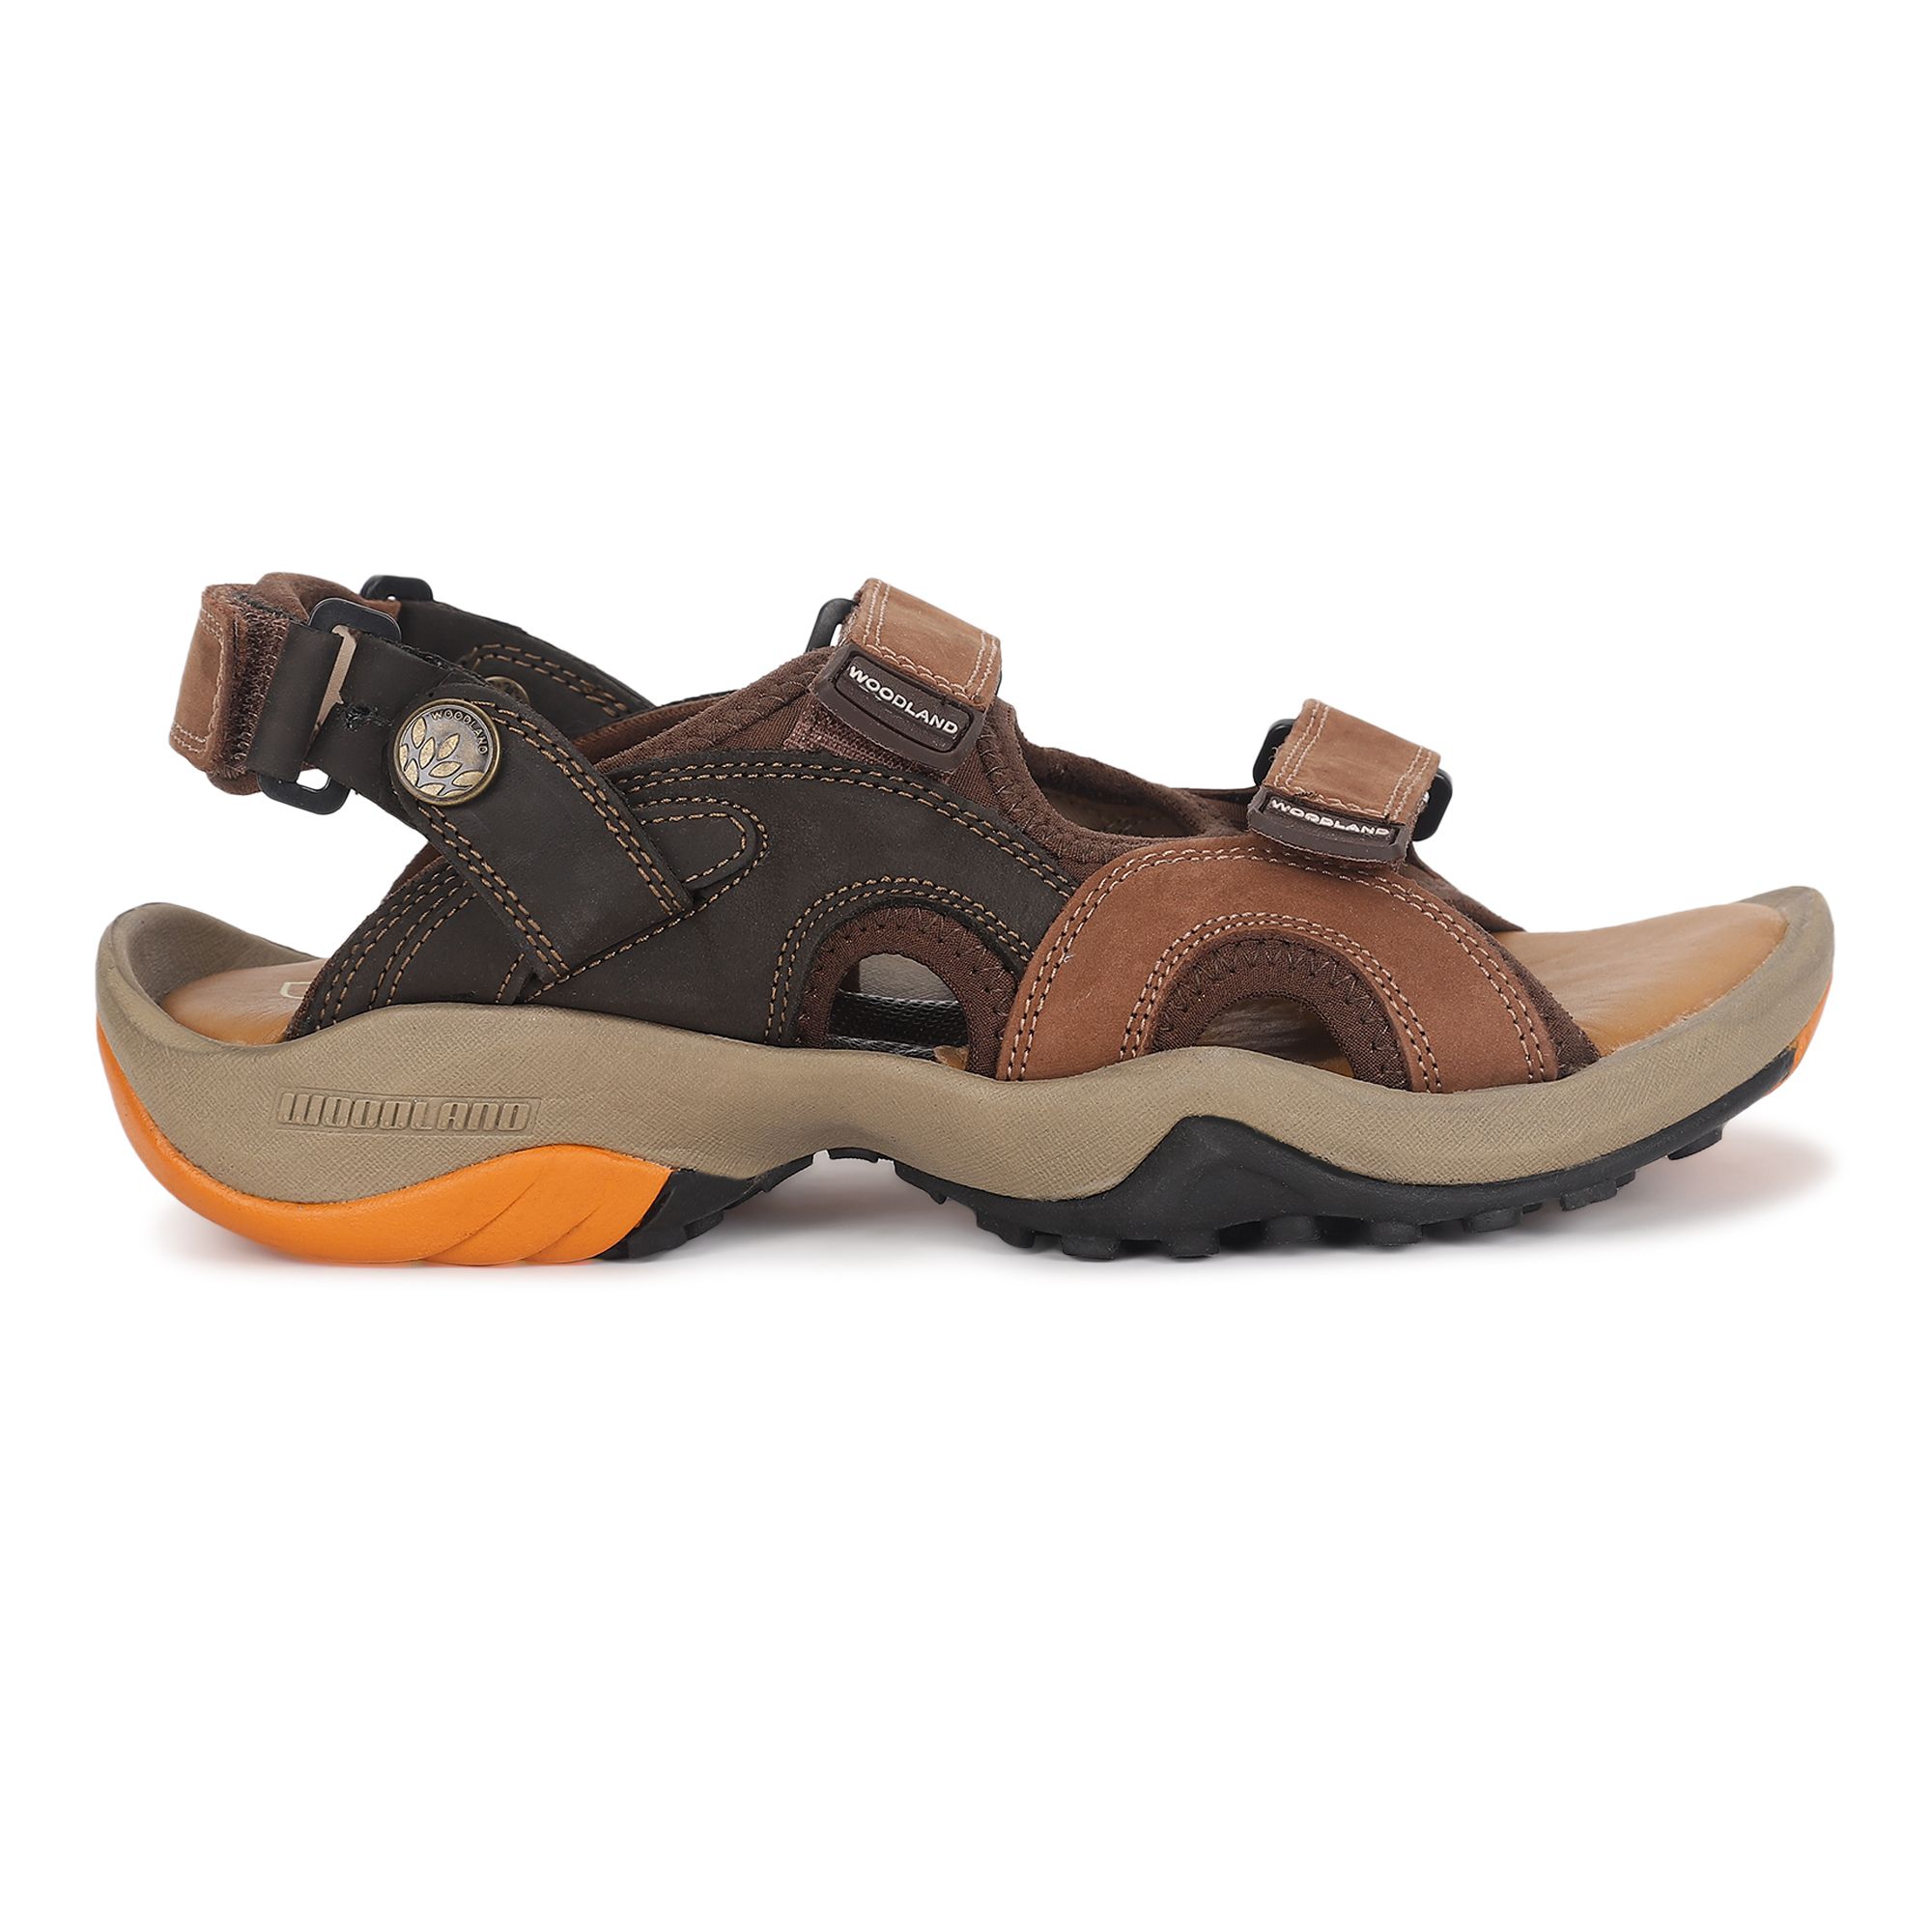 Share 151+ woodland sandals tata cliq super hot - vietkidsiq.edu.vn